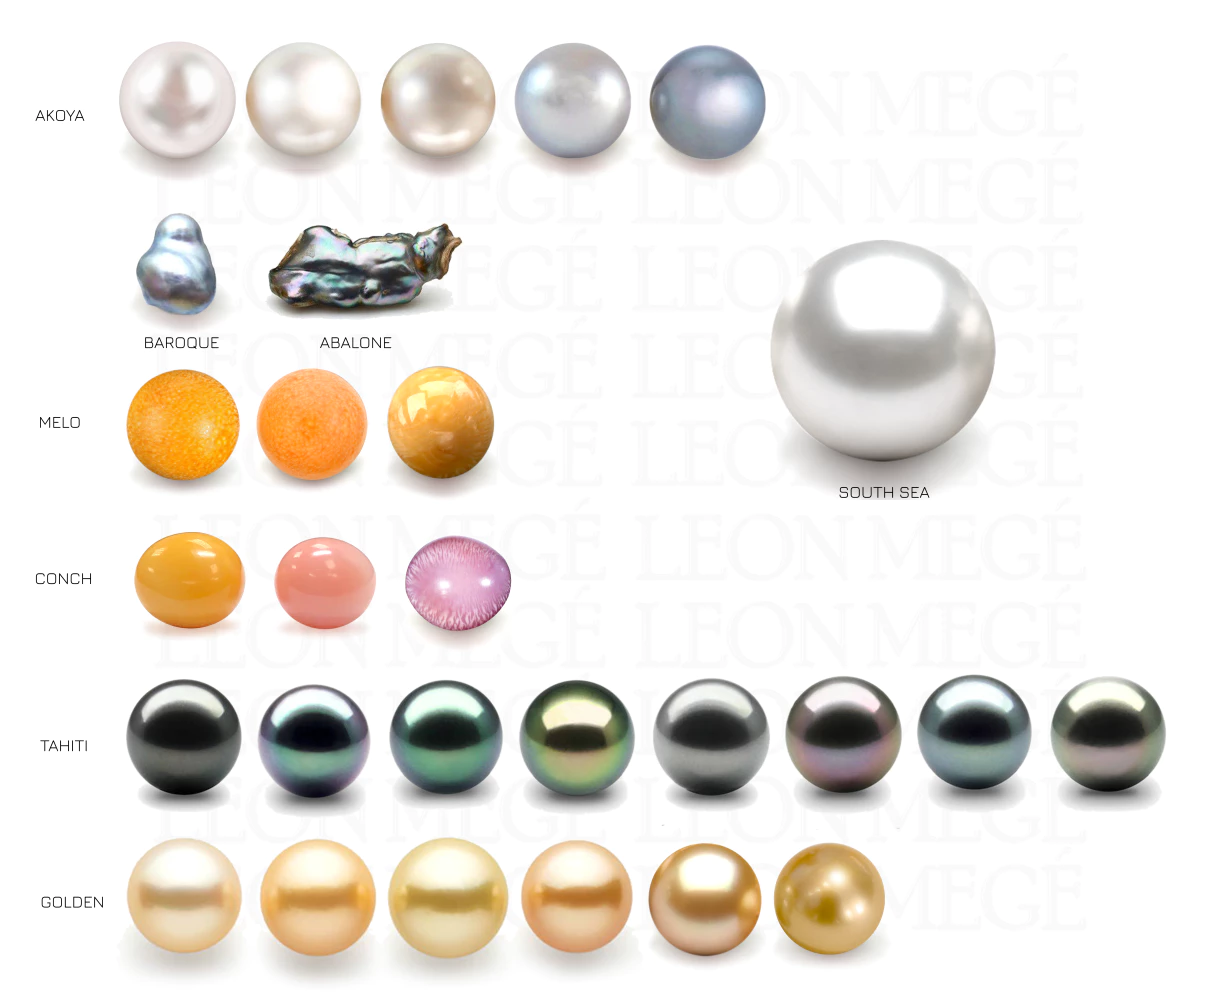 Pearls types illustration Leon Mege